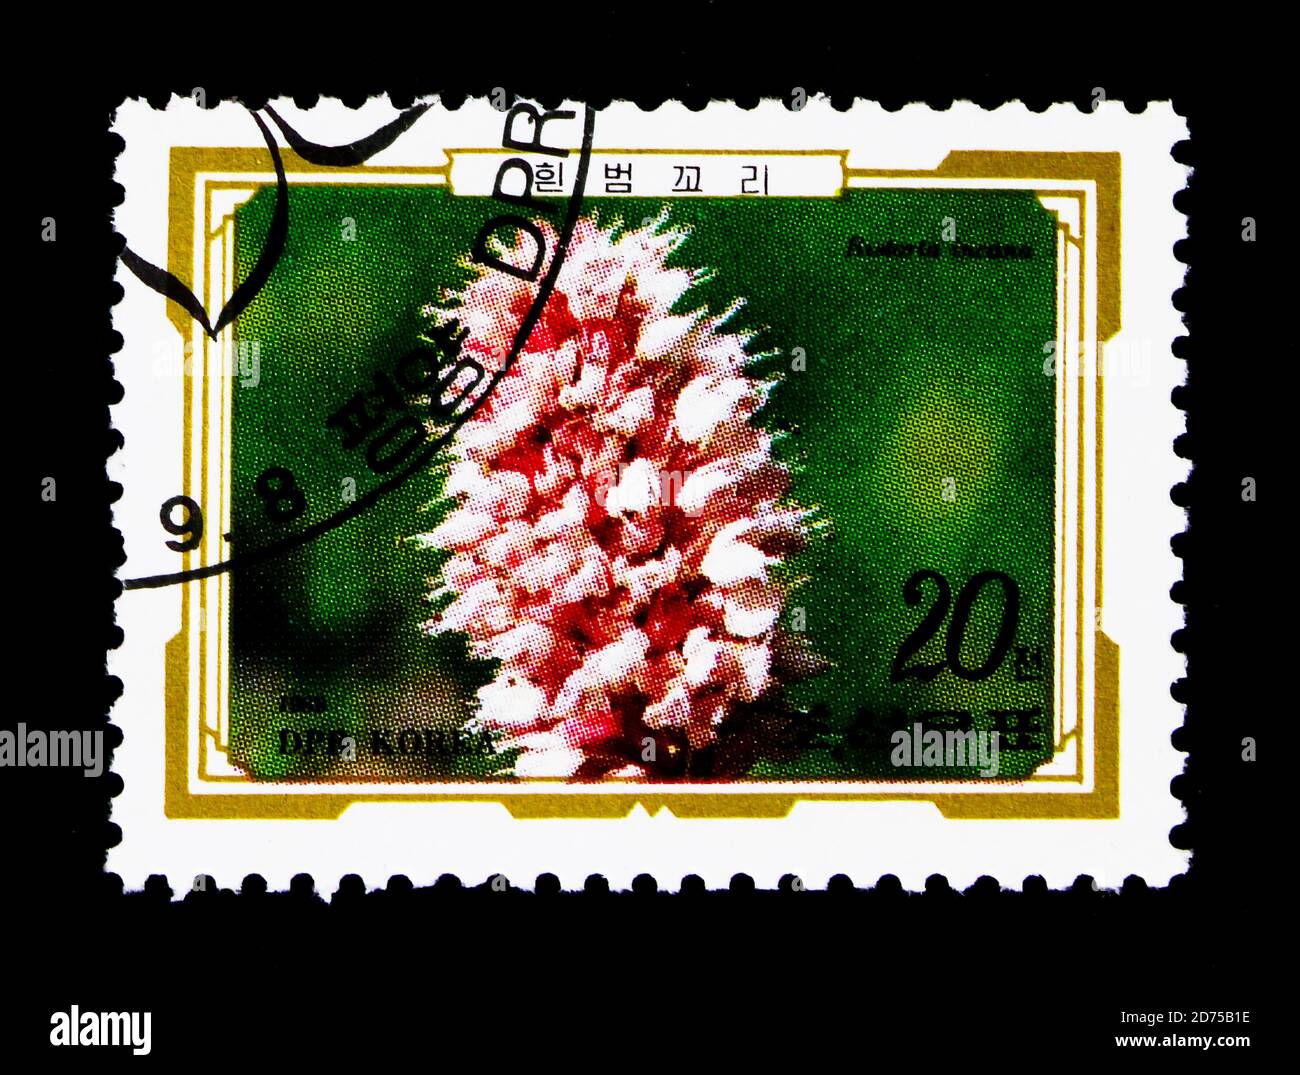 MOSCOU, RUSSIE - 25 NOVEMBRE 2017 : un timbre imprimé en république populaire démocratique de Corée montre Bistorta incana, série de fleurs alpines, vers 1989 Banque D'Images